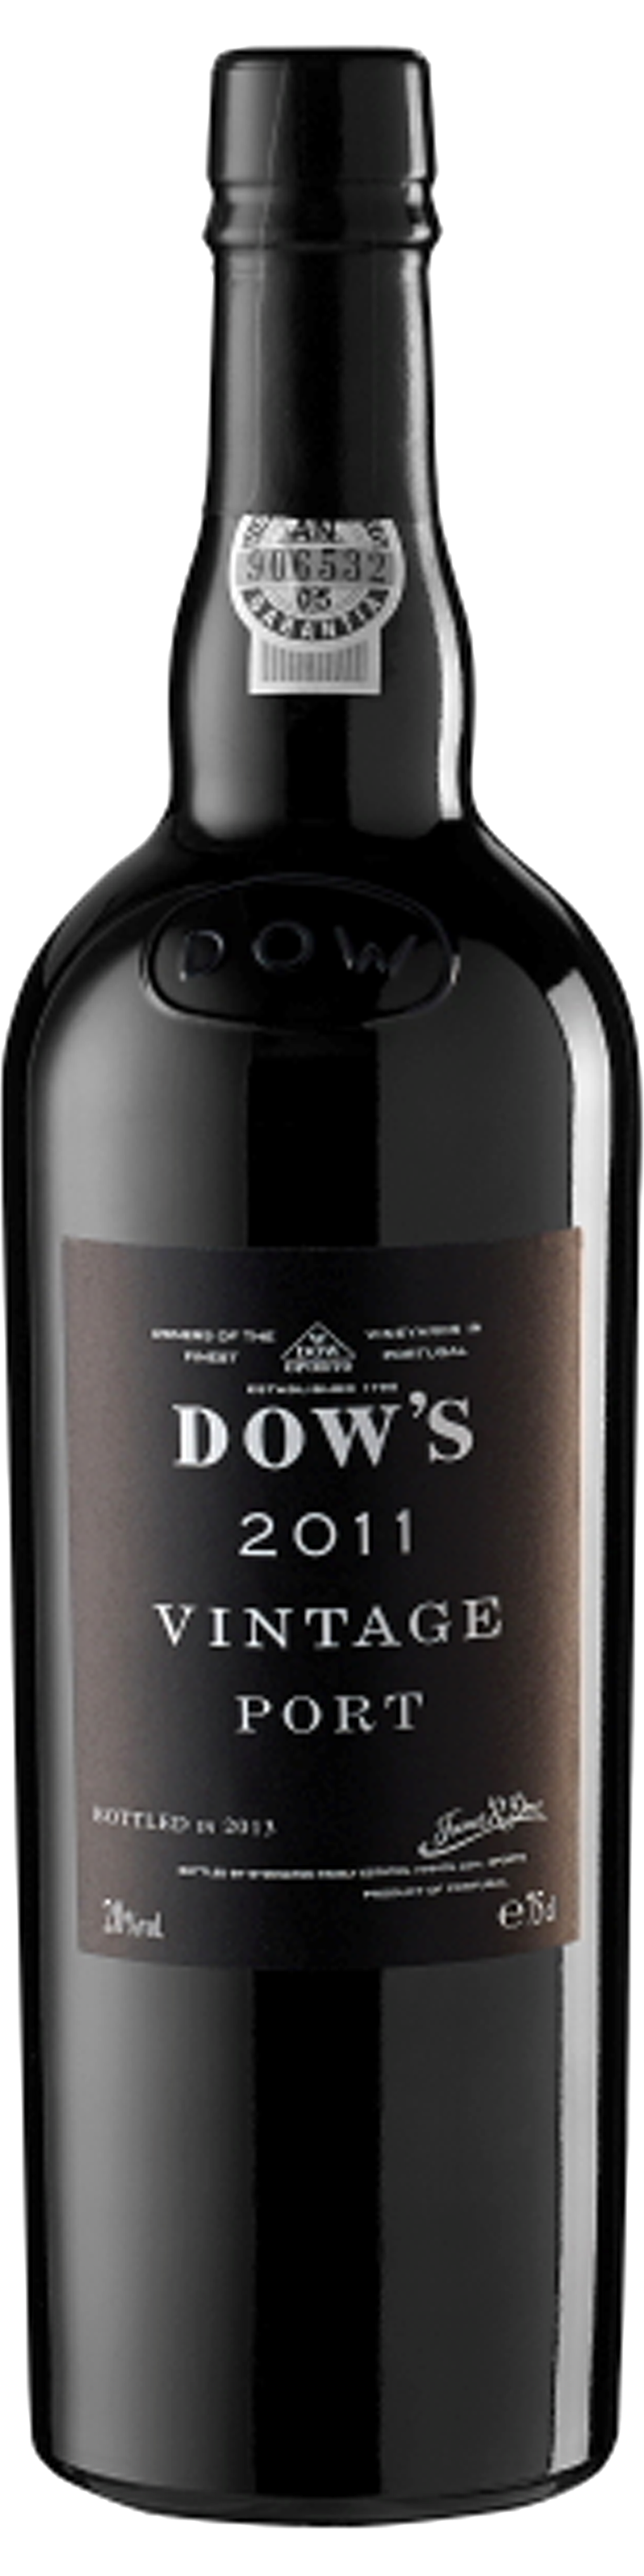 Bottle shot of 2011 Dow